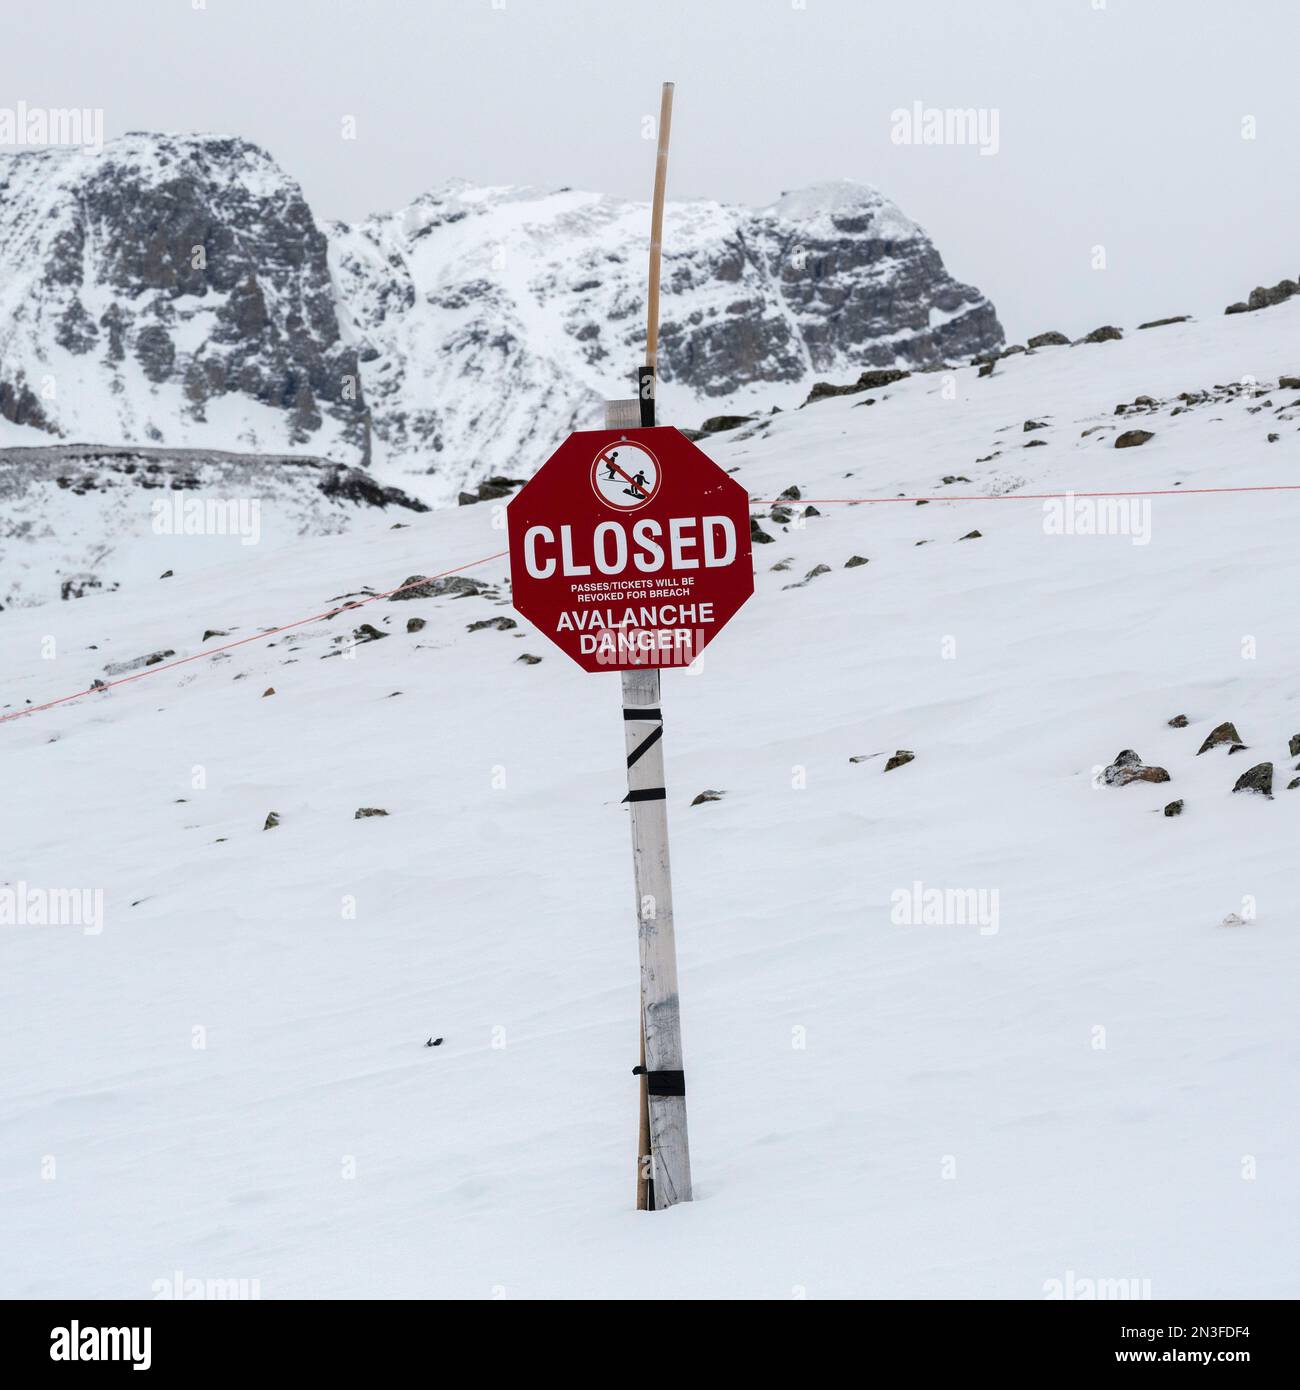 Un panneau rouge indiquant qu'une station de ski est fermée en raison d'avalanches dangereuses, Parc national Banff, Alberta, Canada Banque D'Images